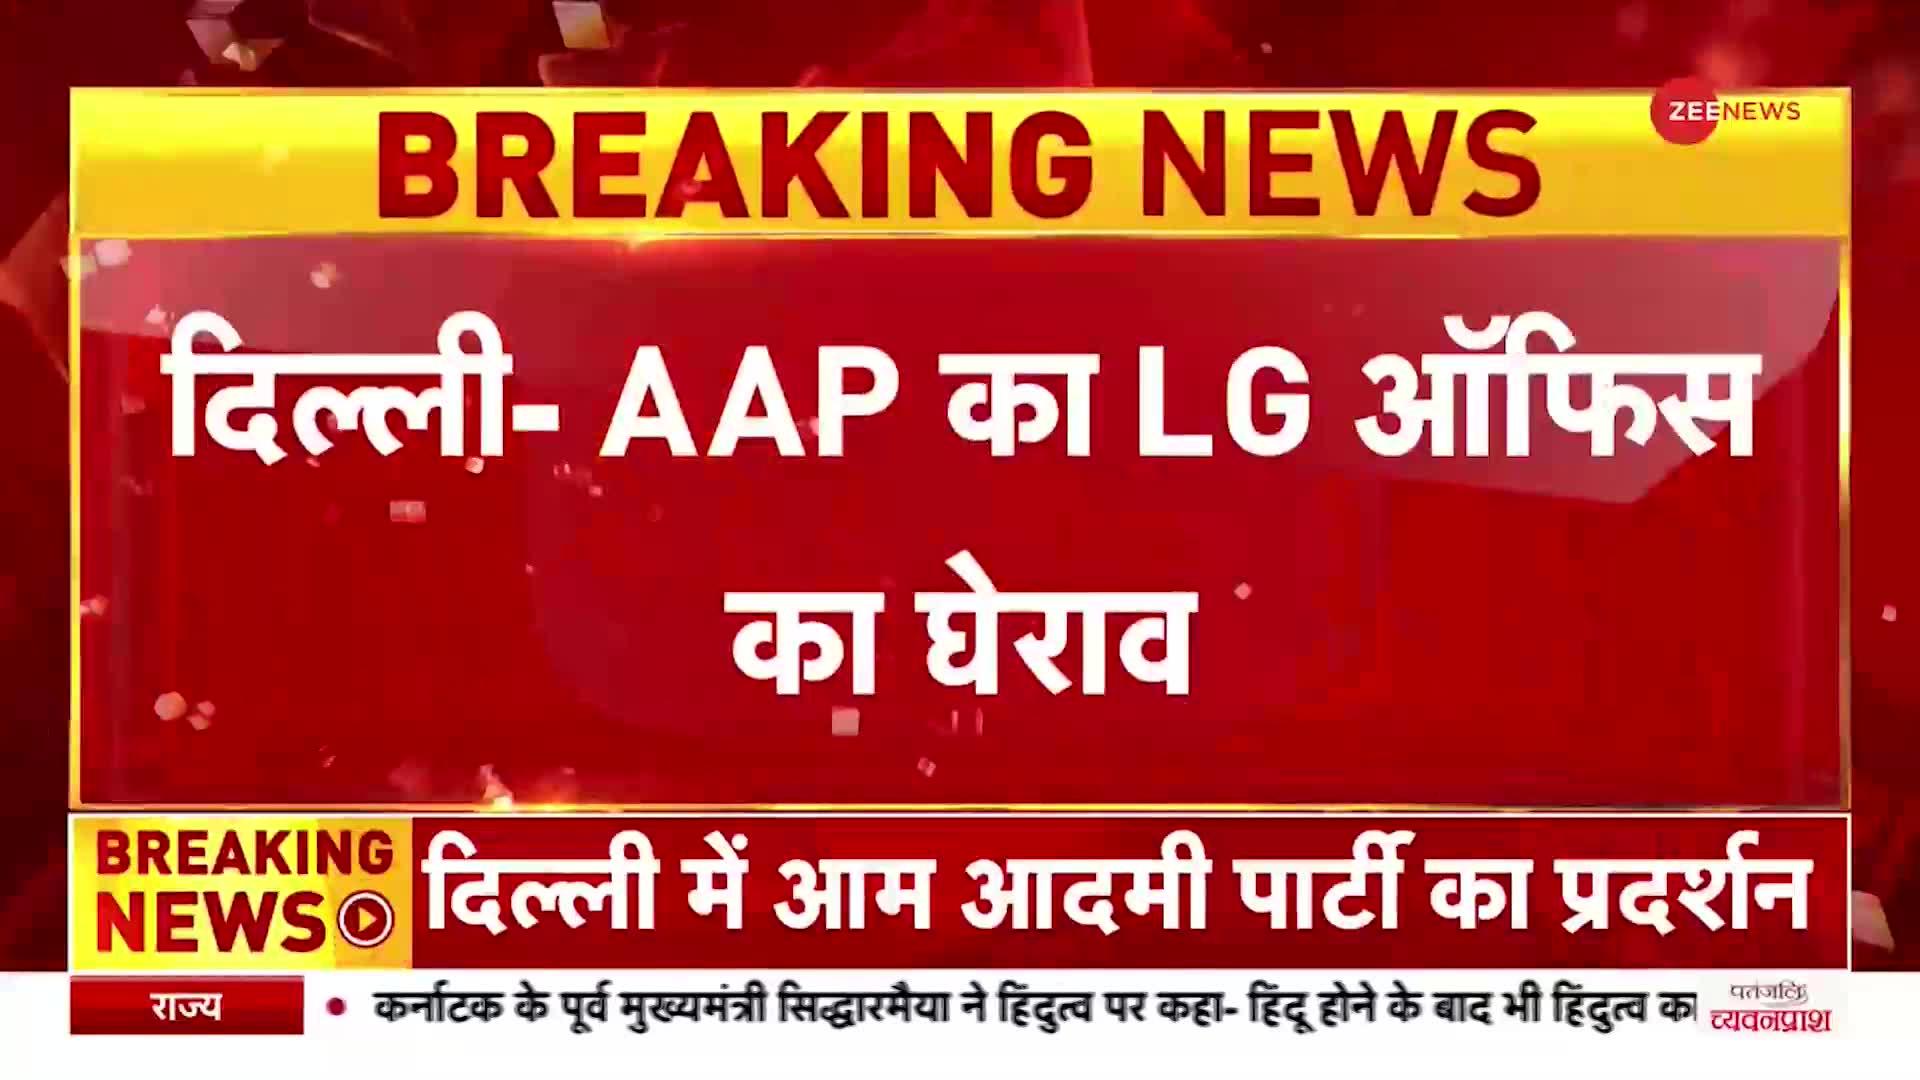 Breaking News: दिल्ली में AAP का प्रदर्शन, LG ऑफिस का किया घेराव